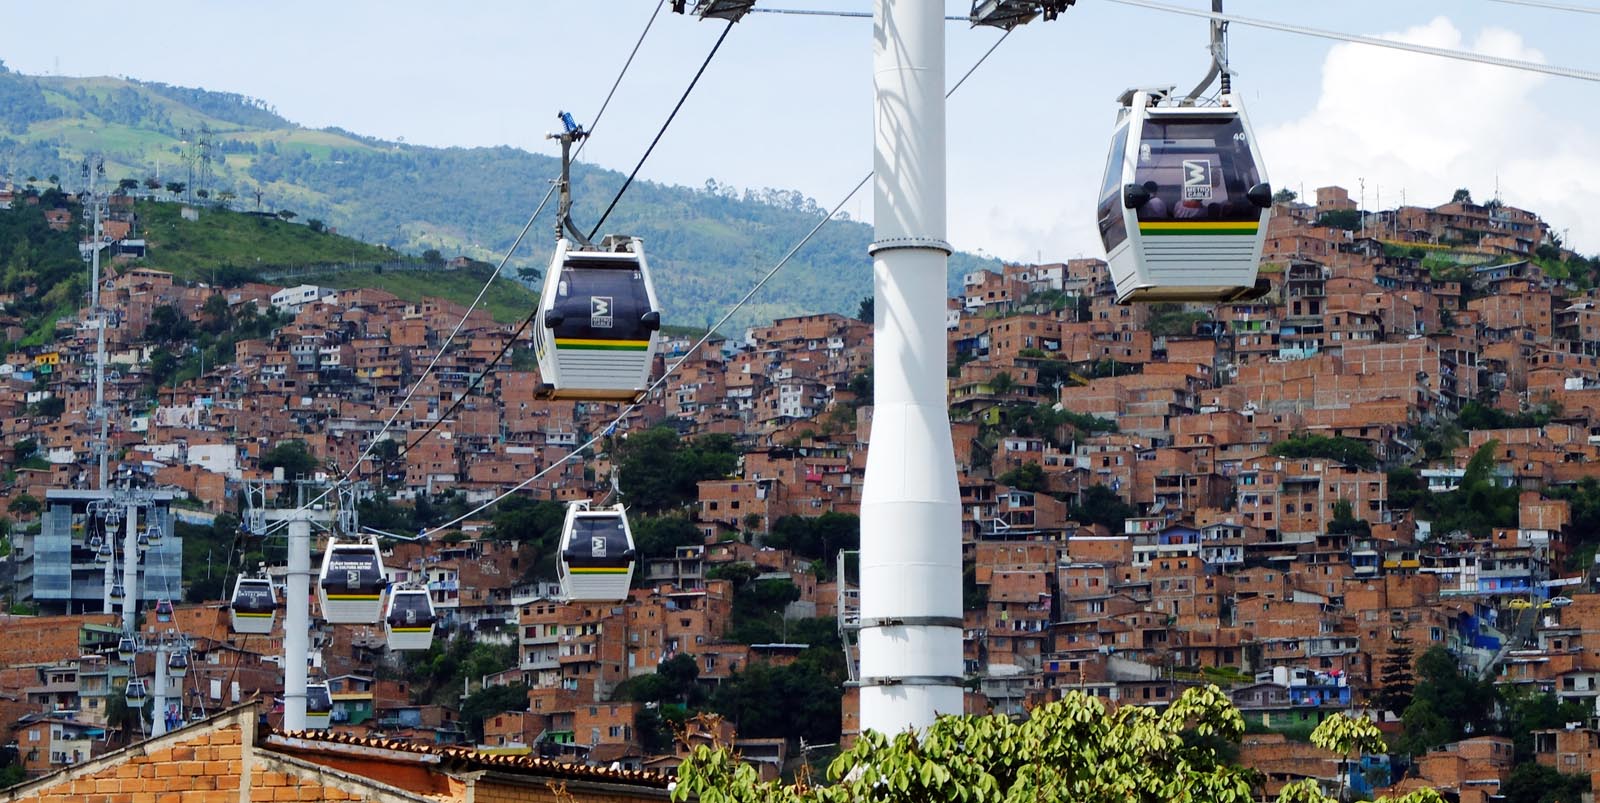 El Cable. El sistema de transporte público que podría imitar Valparaíso para conectar el Plan con sus zonas altas.